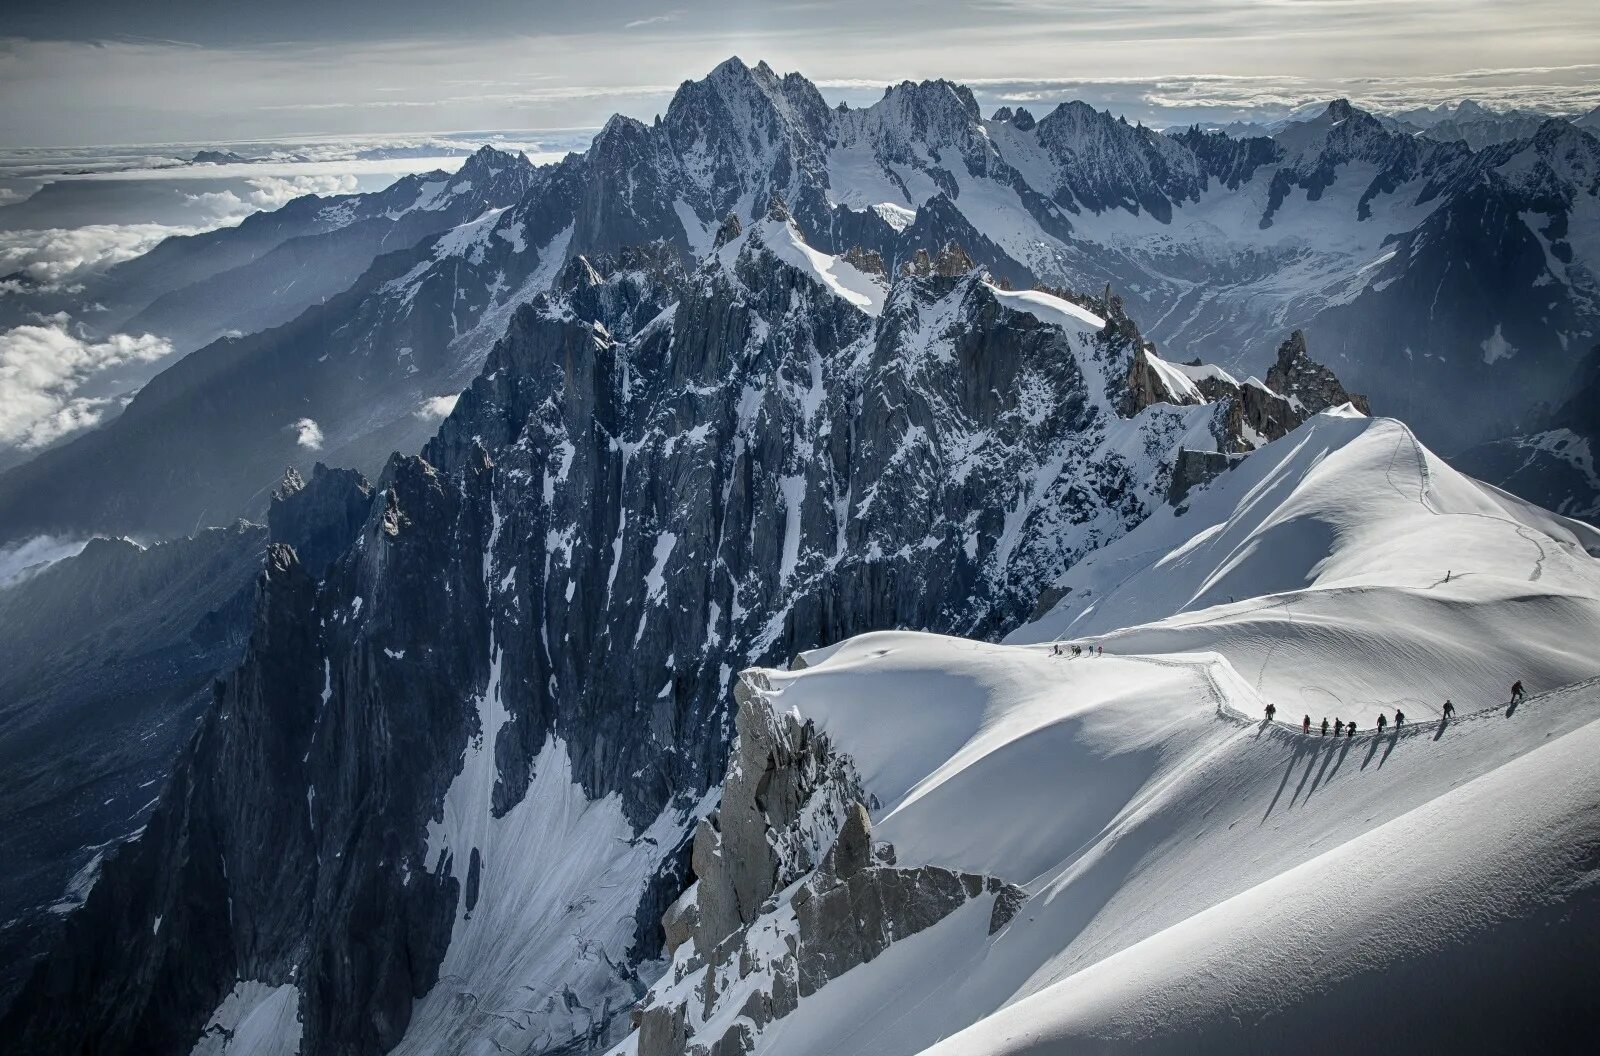 Mont Blanc Mountain. Альпы Монблан. Альпийский пик — гора Мон Блан. Шамони Франция. Средняя высота гор альпы